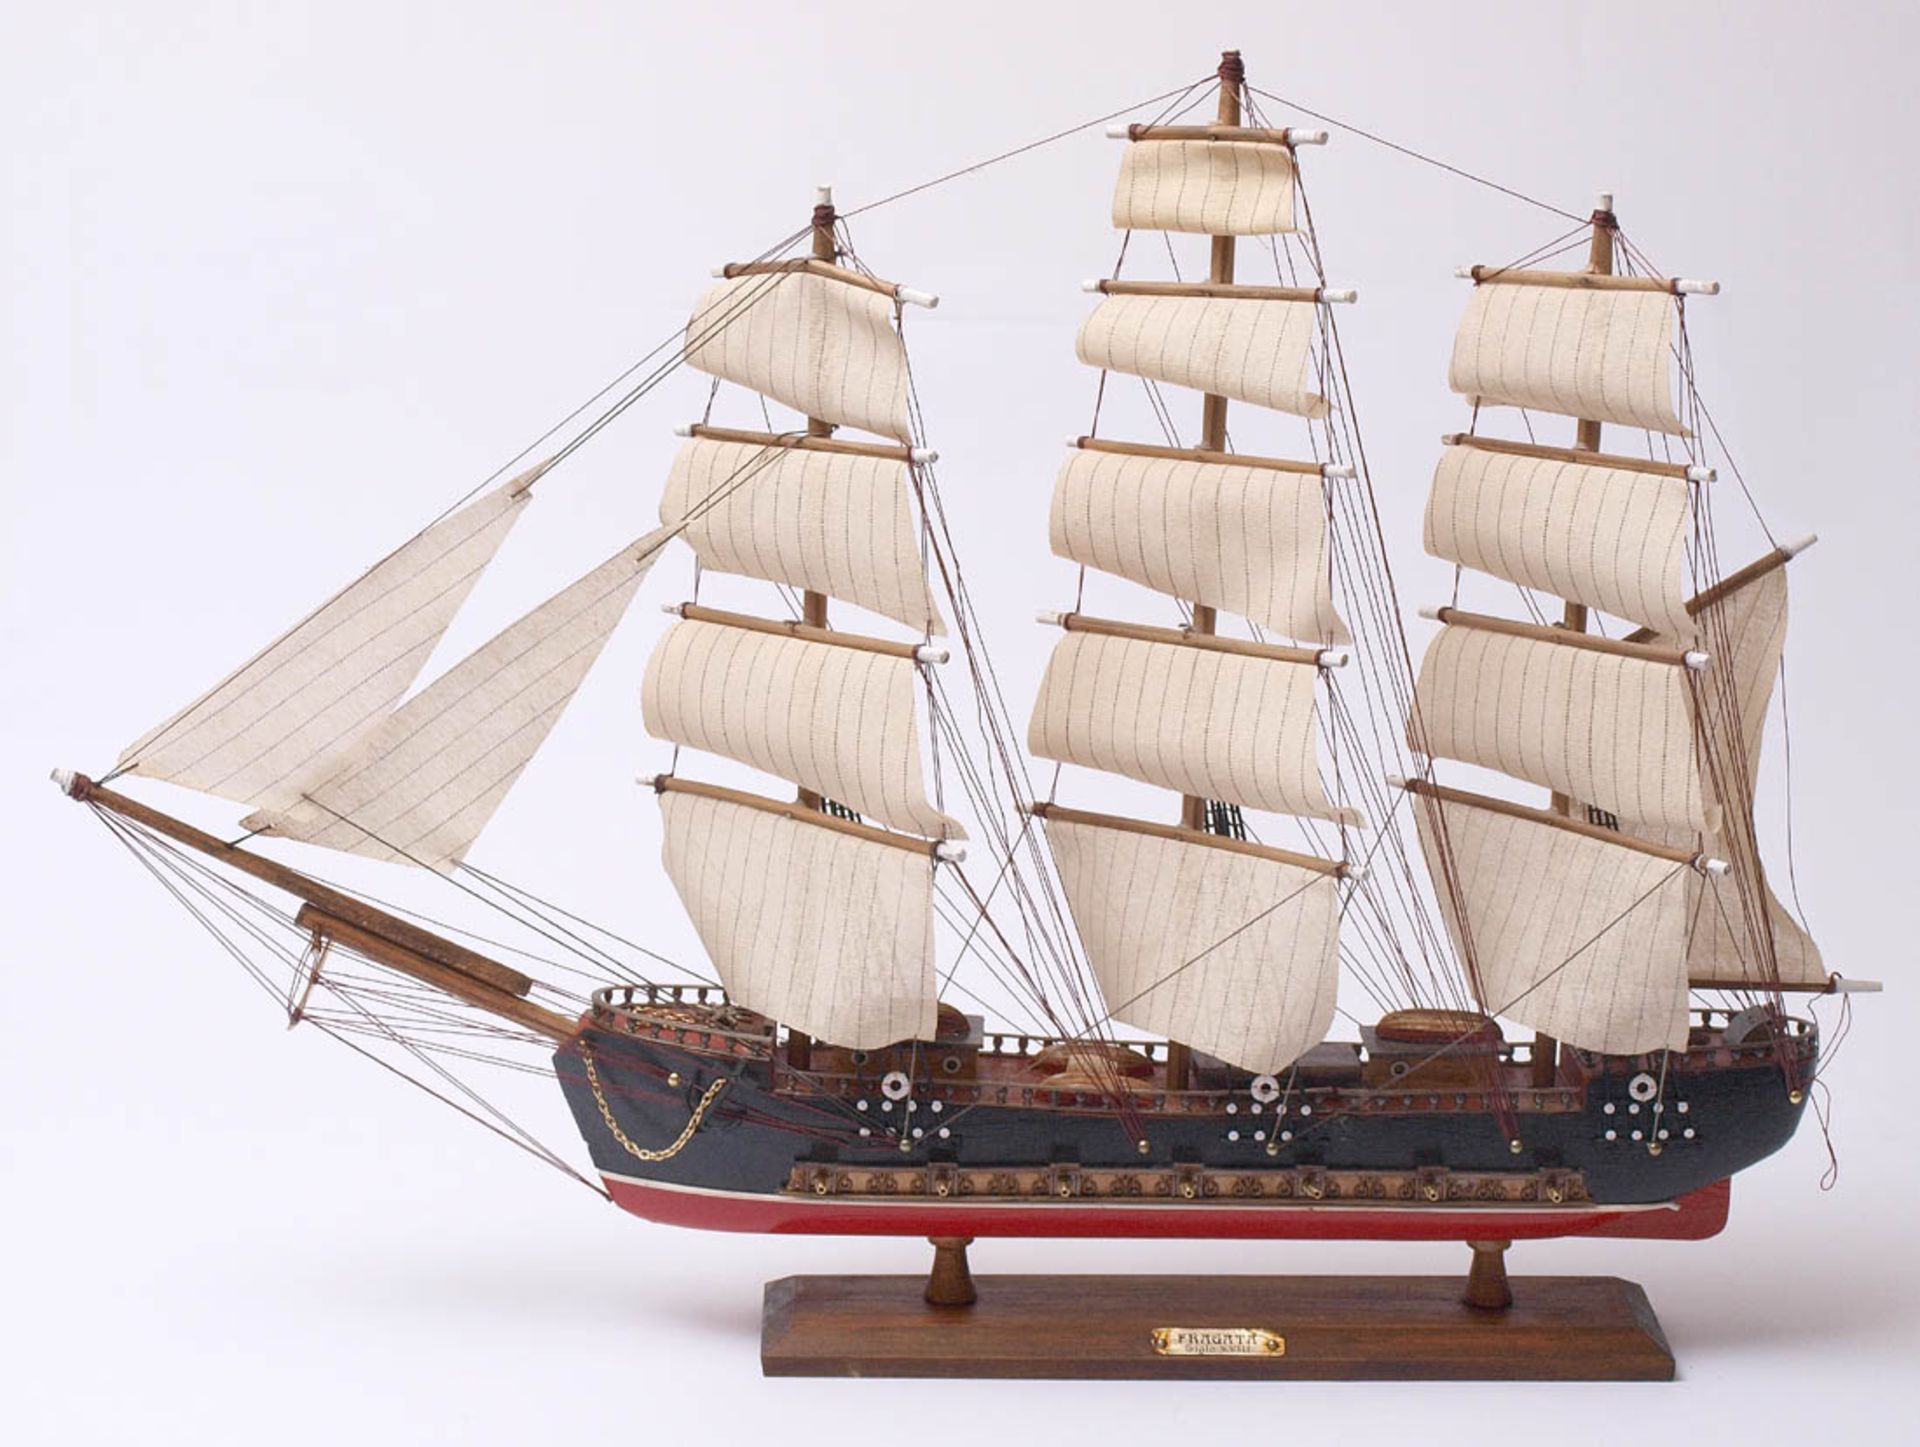 SchiffsmodellModell einer Fregatte aus dem 18.Jhdt. Holz mit Stoffbesegelung. H.51cm, L.71cm.